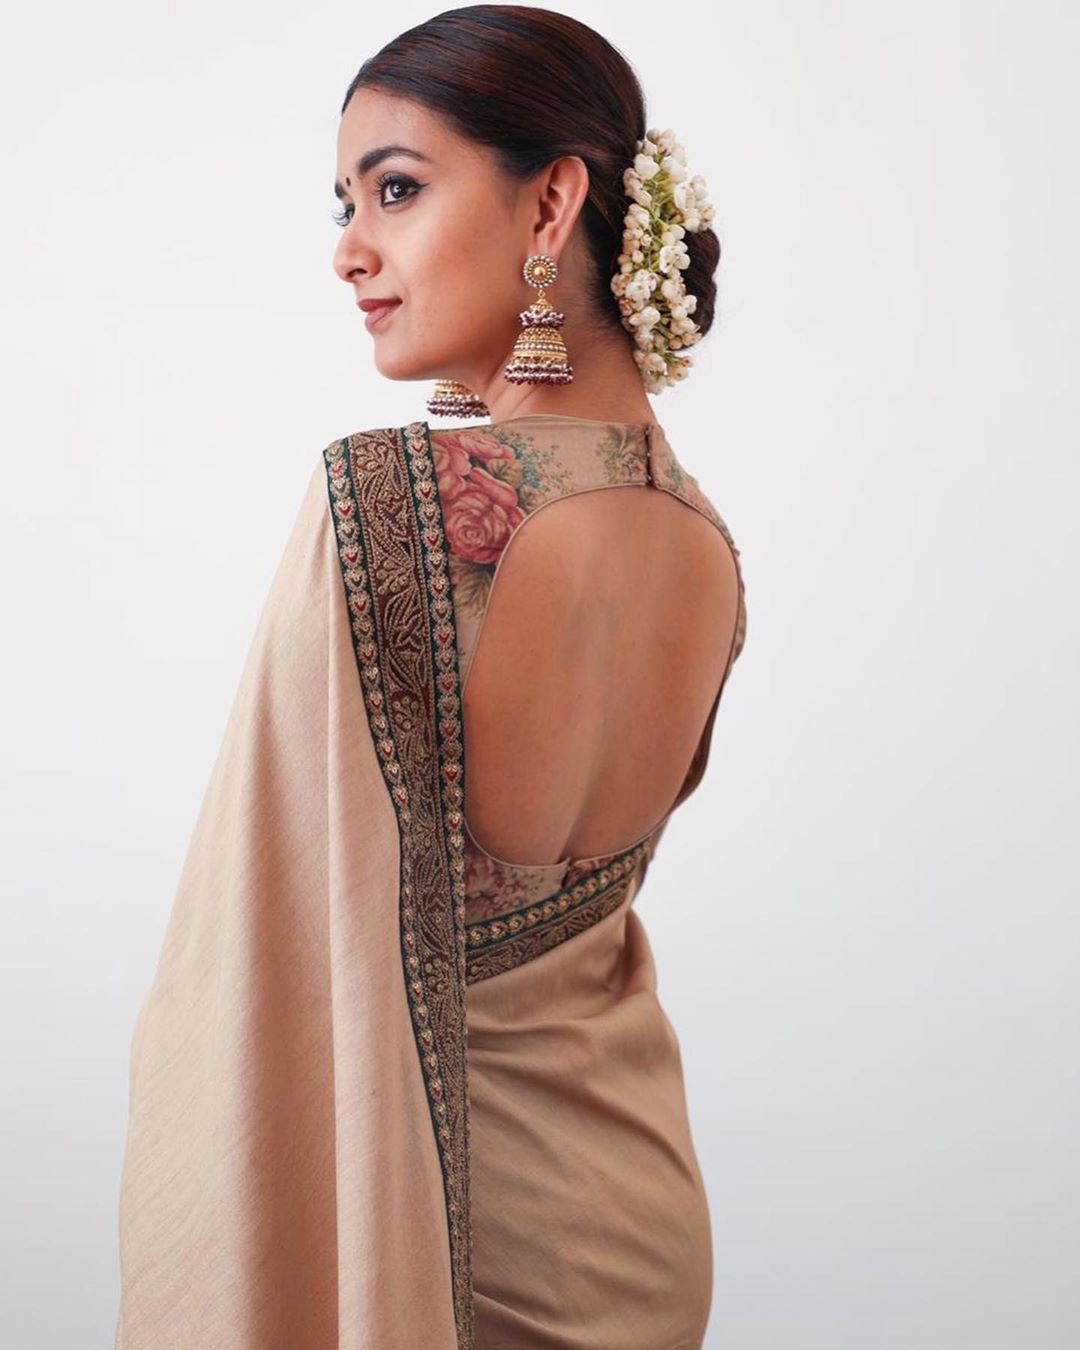 Keerthy Suresh mesmerizes Hot look in saree